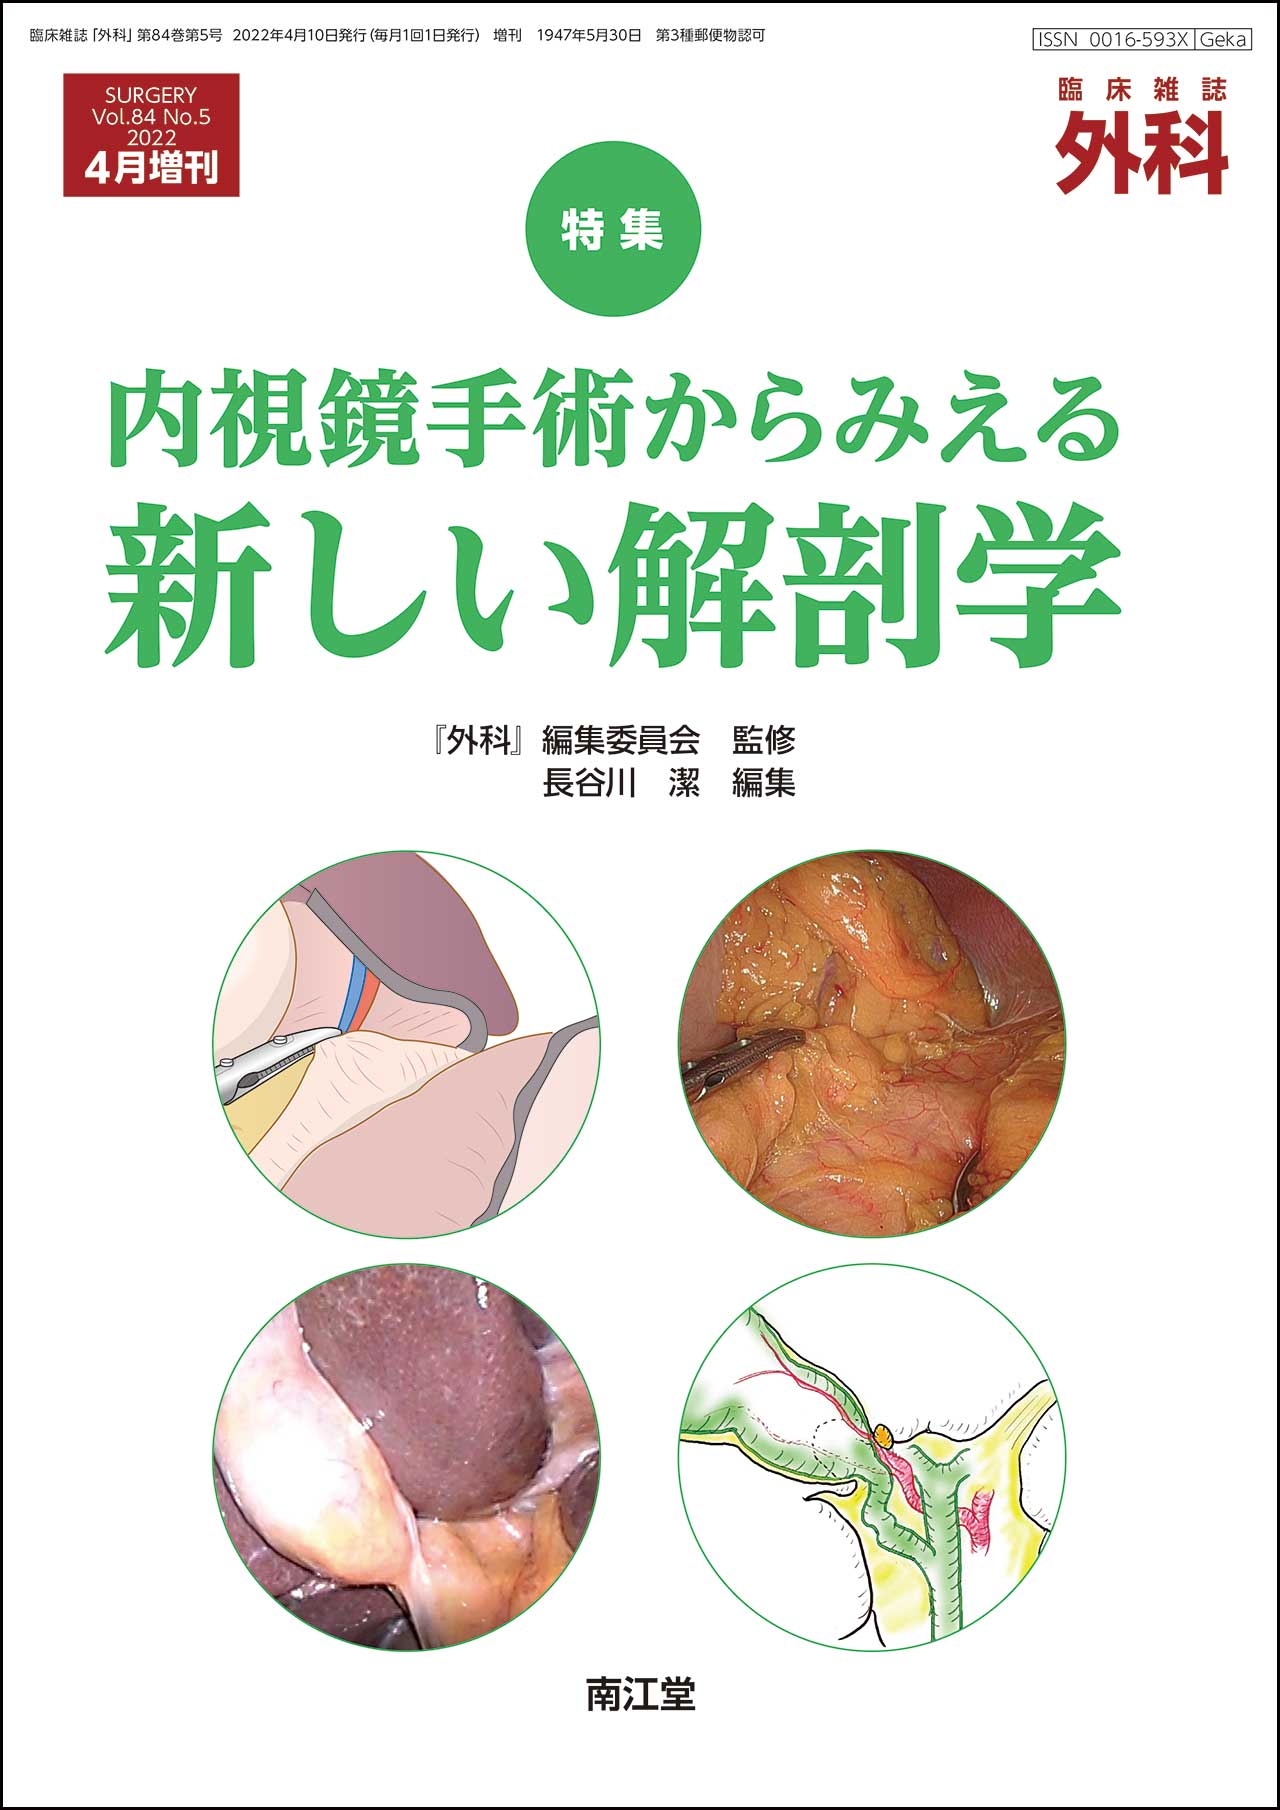 内視鏡手術からみえる新しい解剖学(Vol.84 No.5)2022年4月増刊号